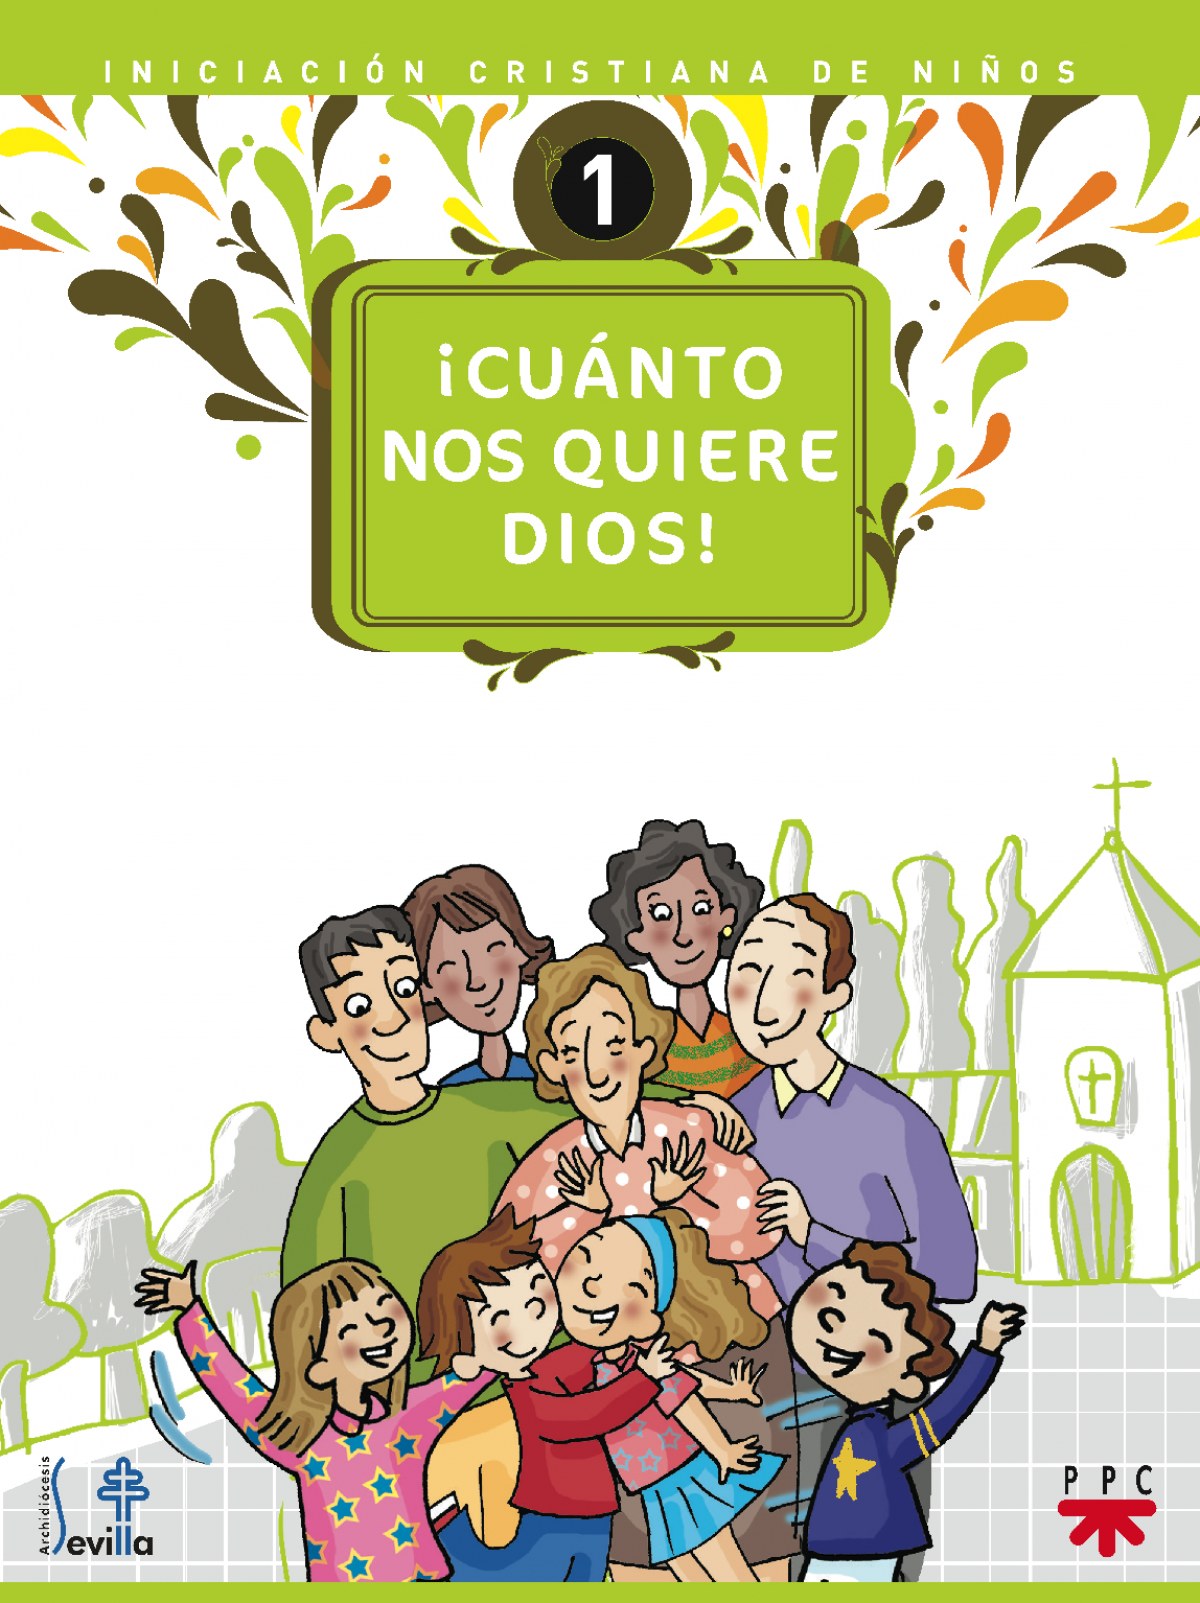 íCuánto nos quiere Dios! Iniciación cristiana de niños 1 Iniciación crsitiana de niños - Delegación Diocesana de Catequesis de Sevilla,